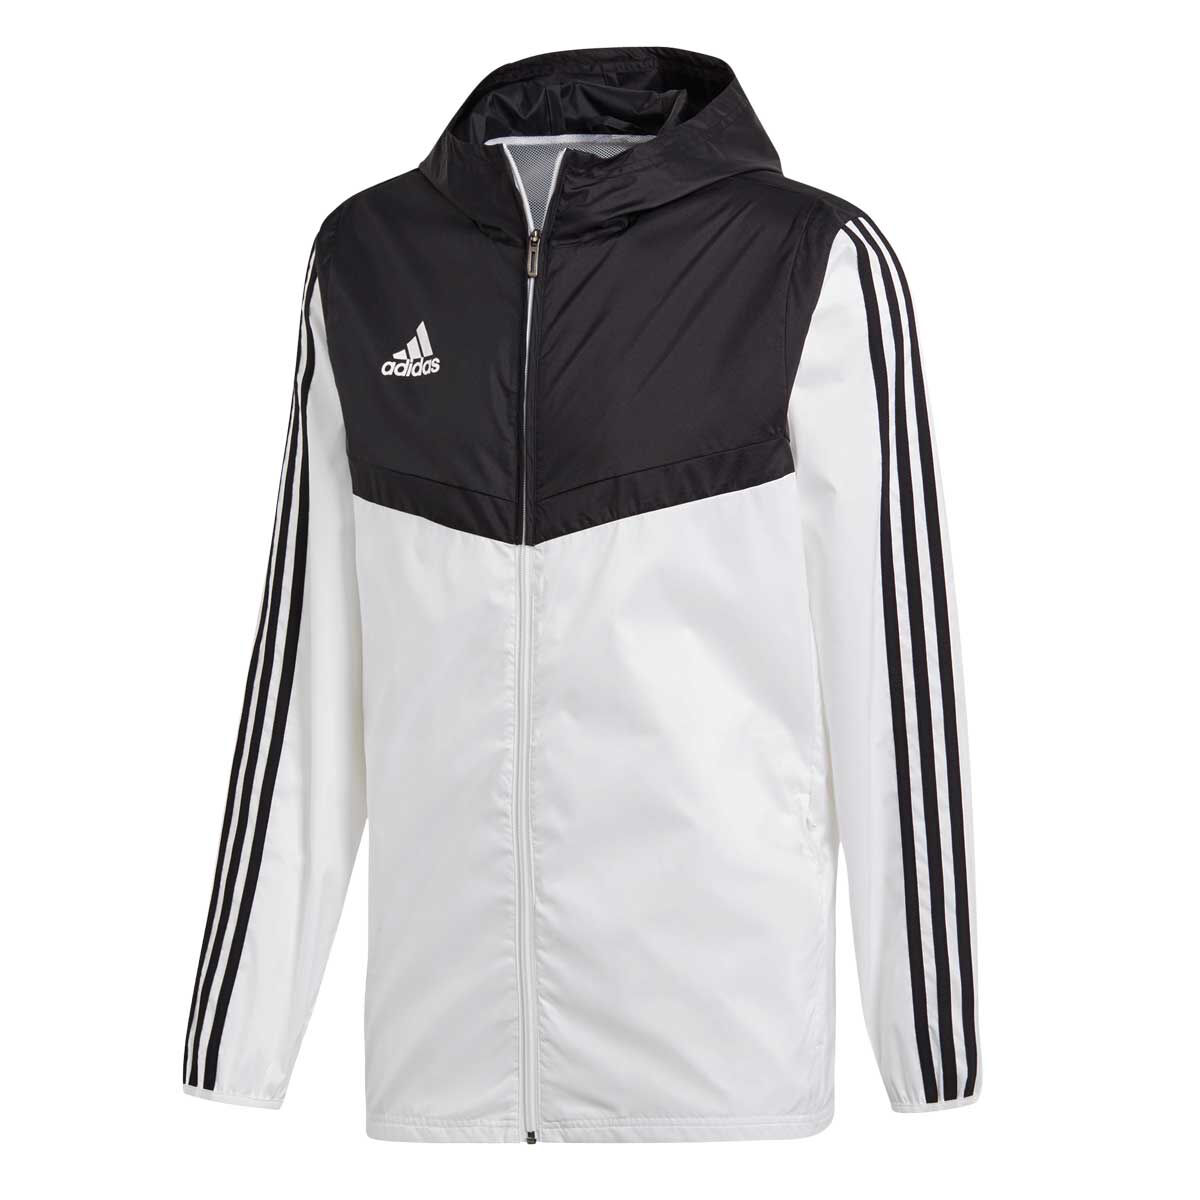 adidas windbreaker jacket black and white